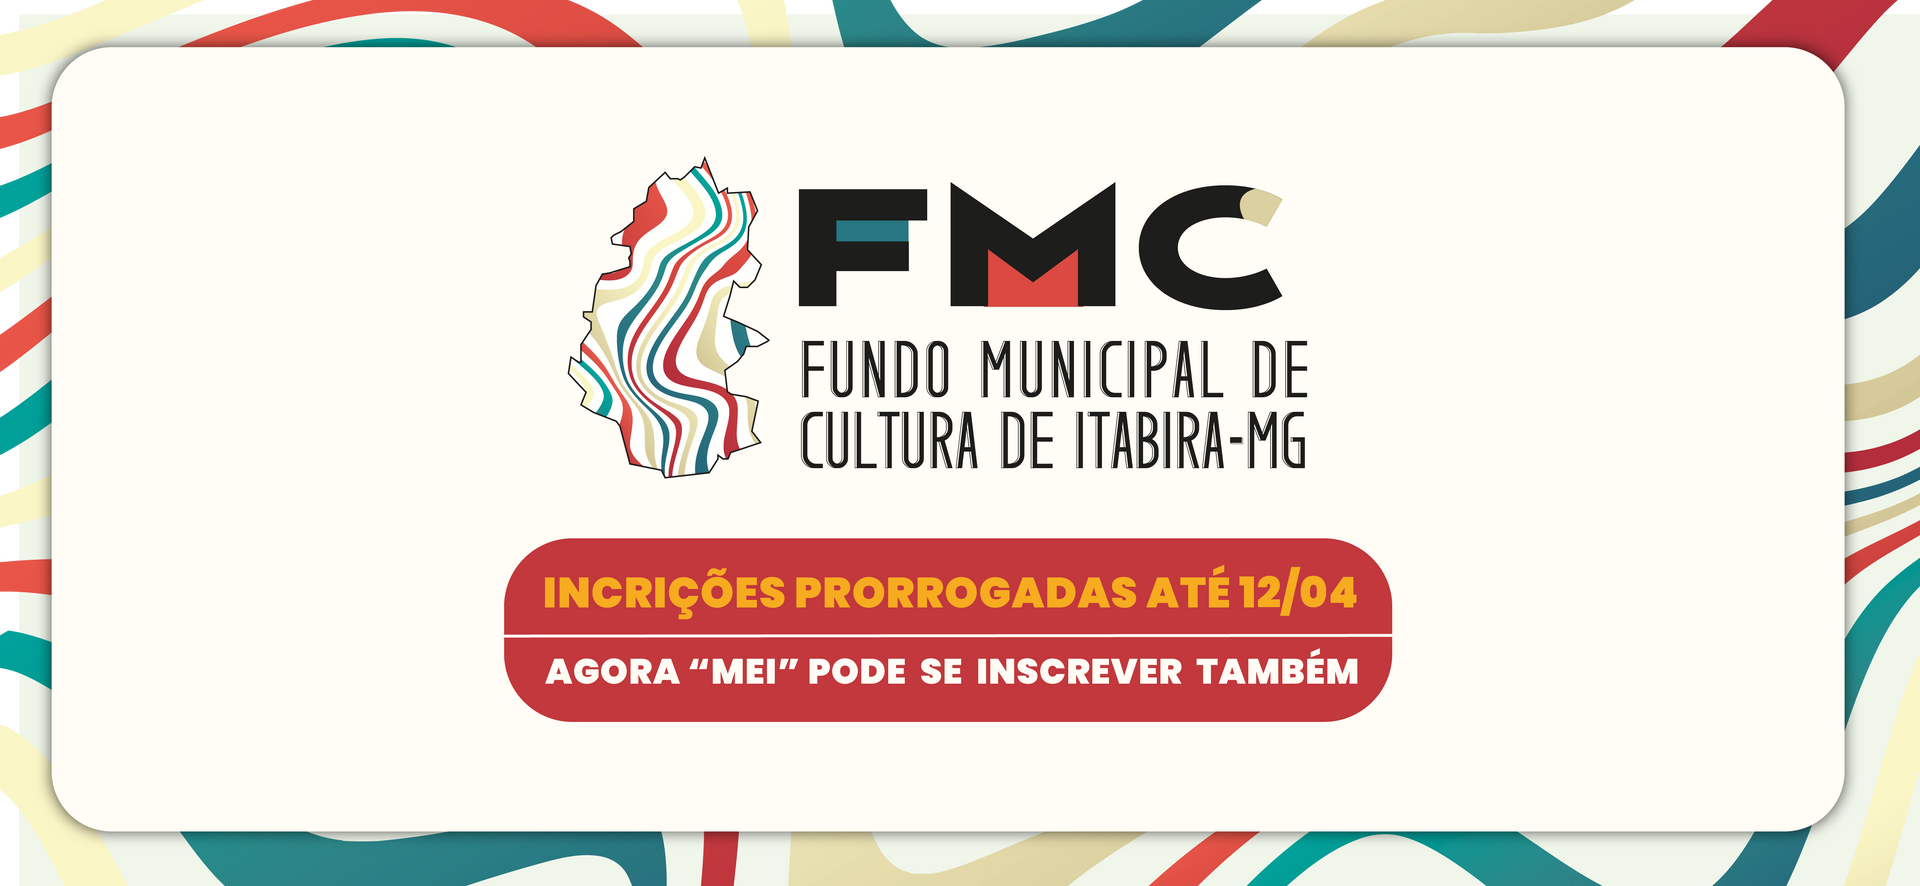 Fundo Municipal de Cultura de Itabira